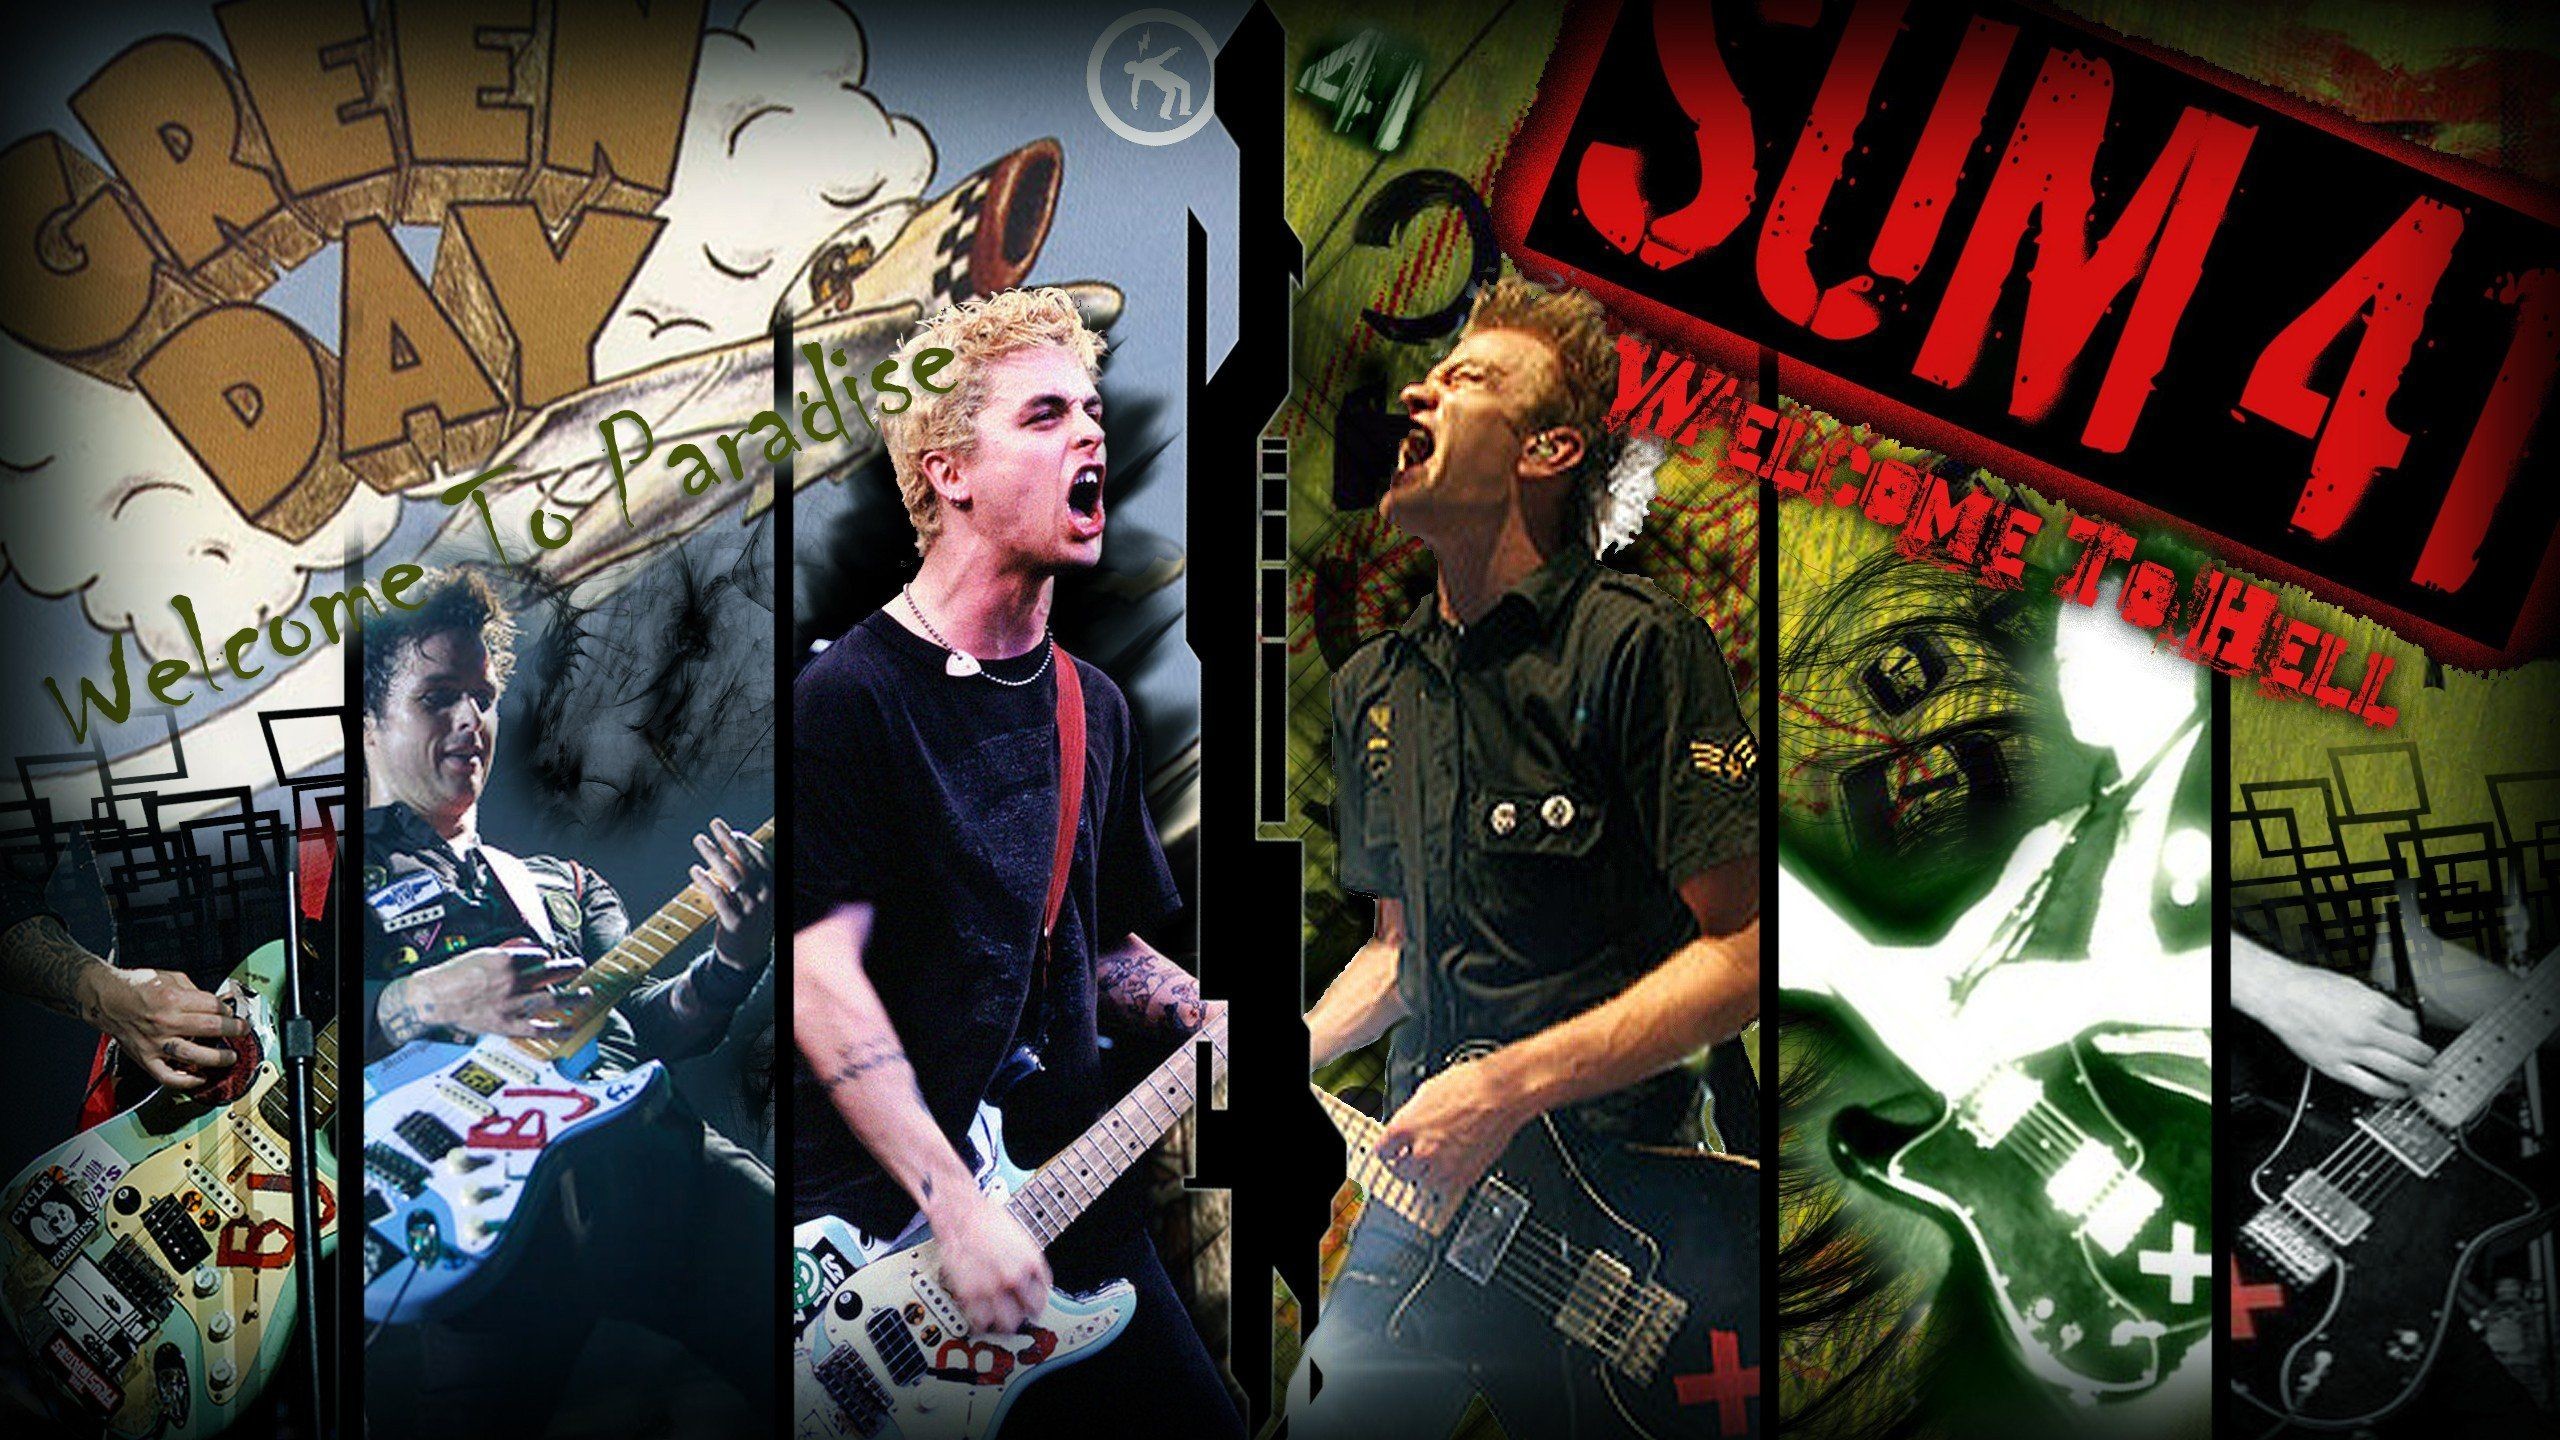 2560x1440 Green Day punk Billie Joe Armstrong Pop Punk sum 41 punk rock .